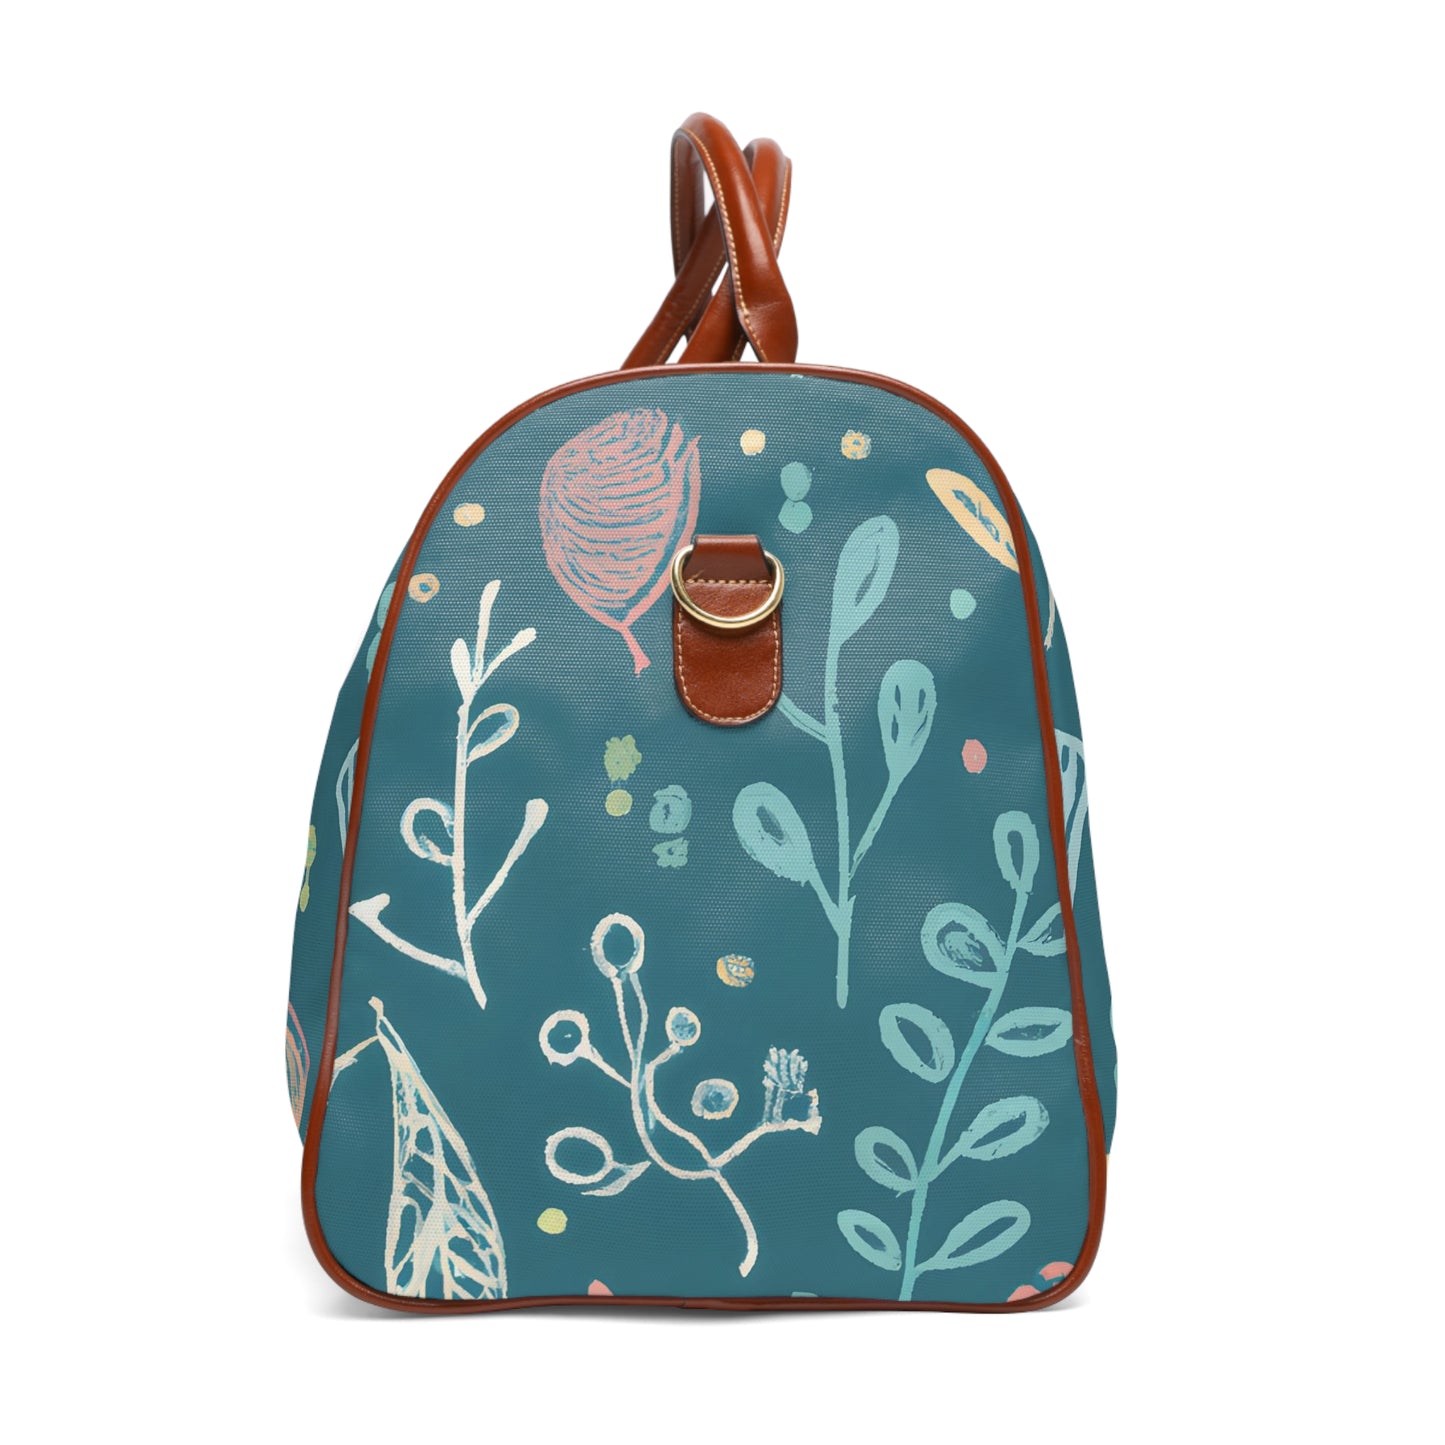 Planda Elsie - Water-resistant Travel Bag